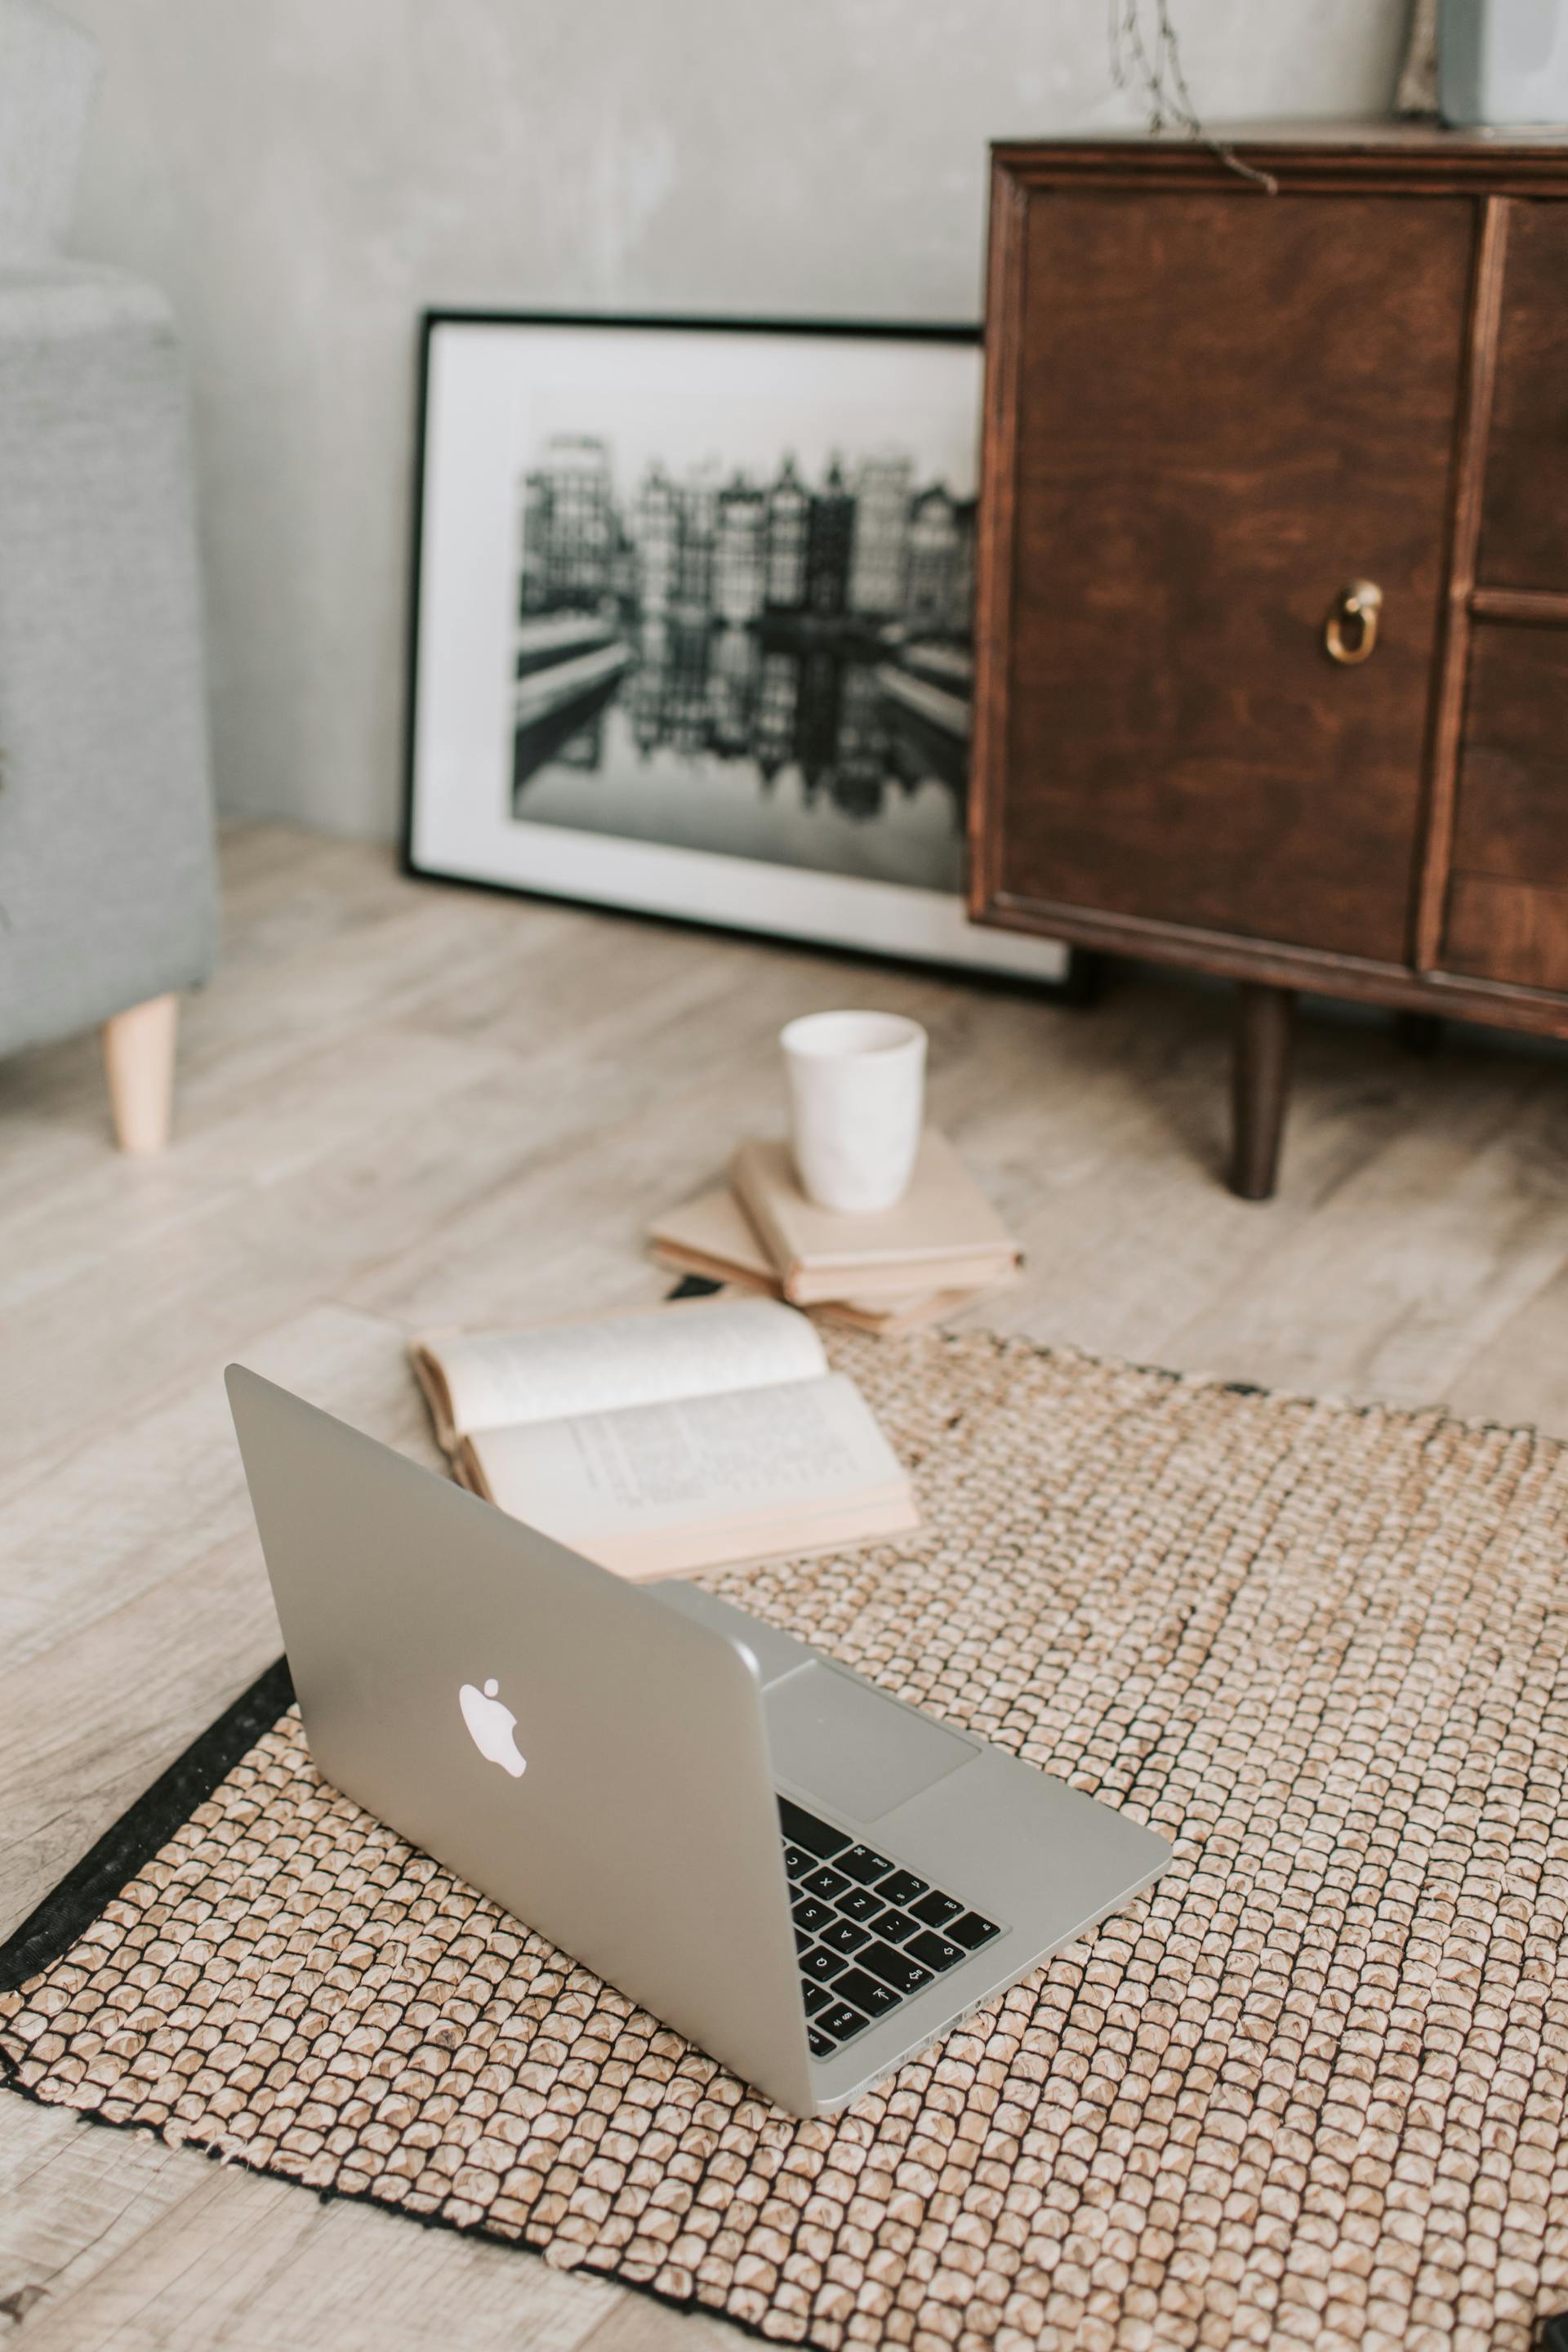 Ein Laptop und Bücher liegen auf einem Teppich | Quelle: Pexels